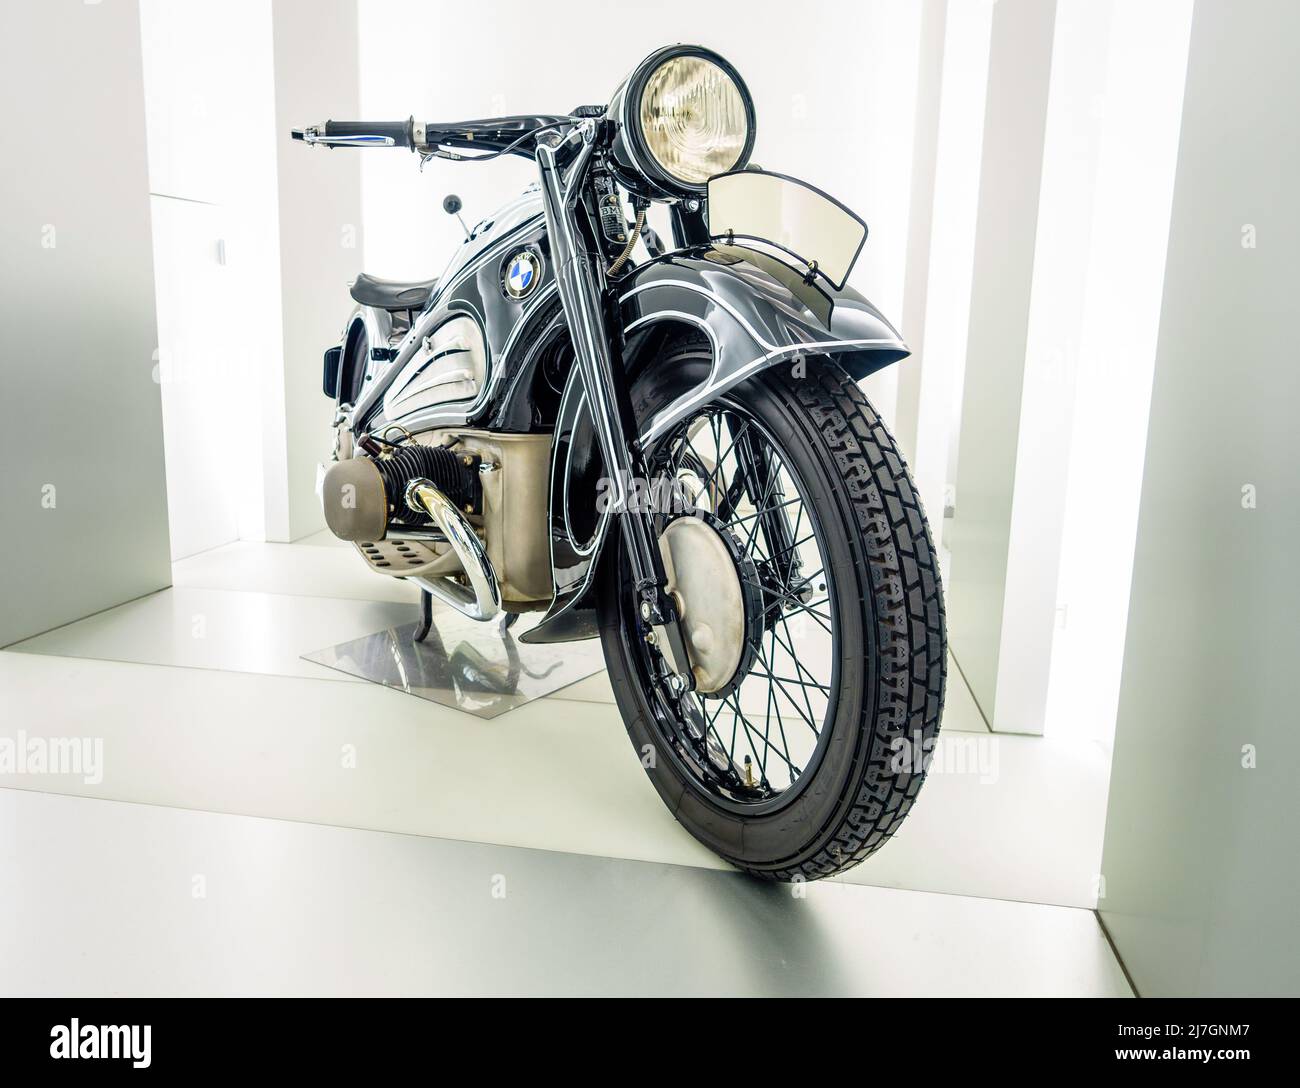 München, 29. September 2015: 1937 BMW R7 Classic Motorrad im BMW Museum in München Stockfoto